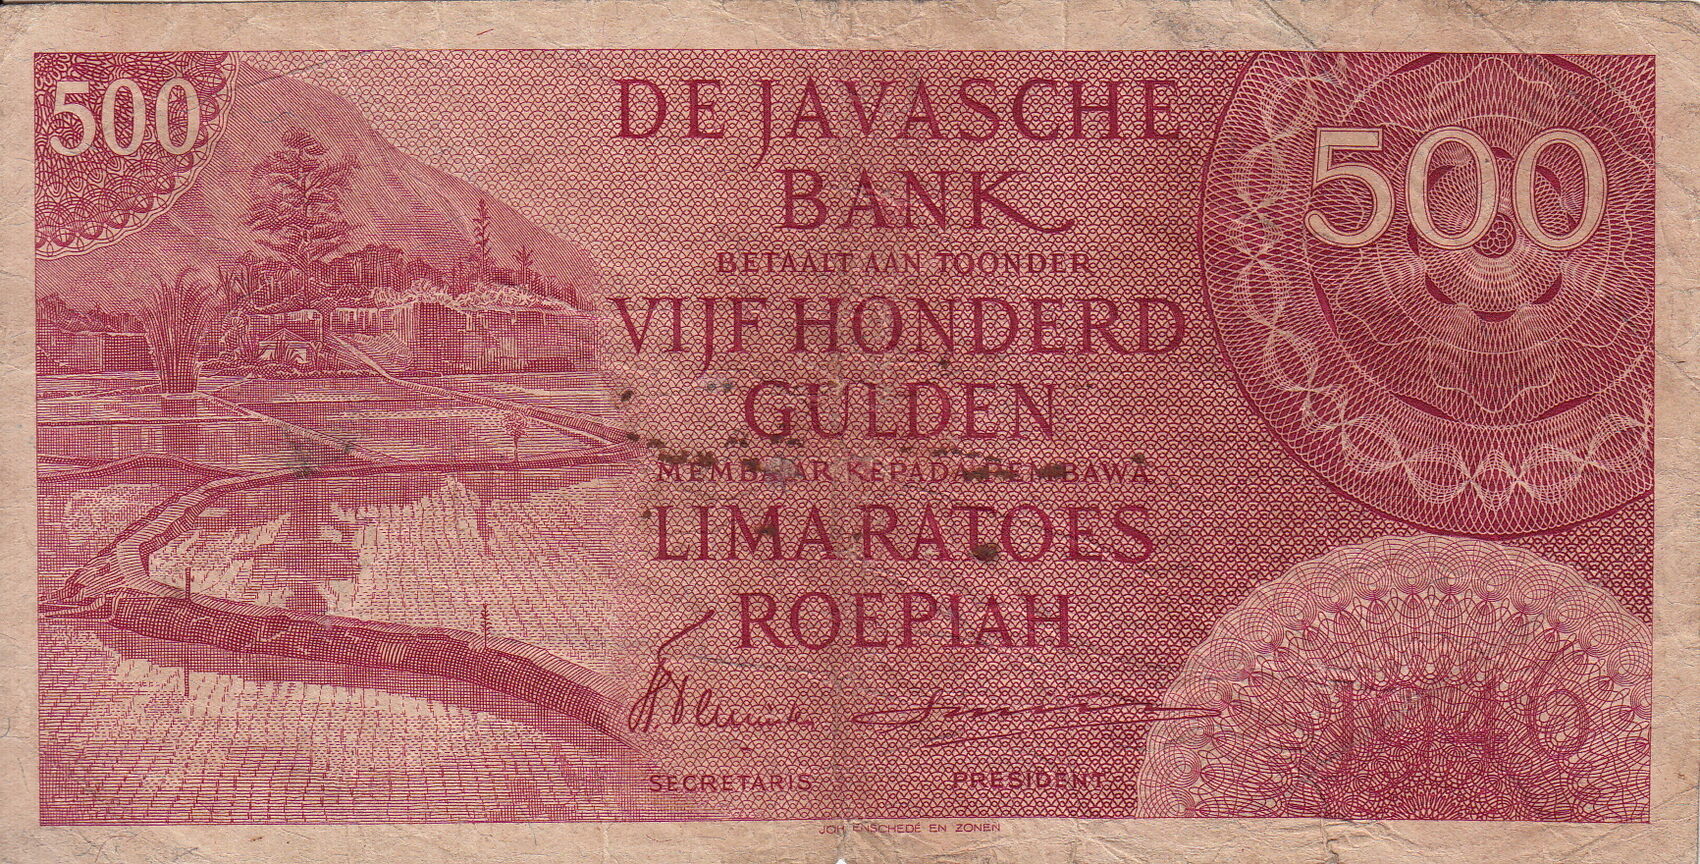 Banking 500. Нидерландская Индия 100 гульденов 1946. Banknote Индия, 500. Гульден нидерландской новой Гвинеи банкнота. Облигация голландские гульдены.